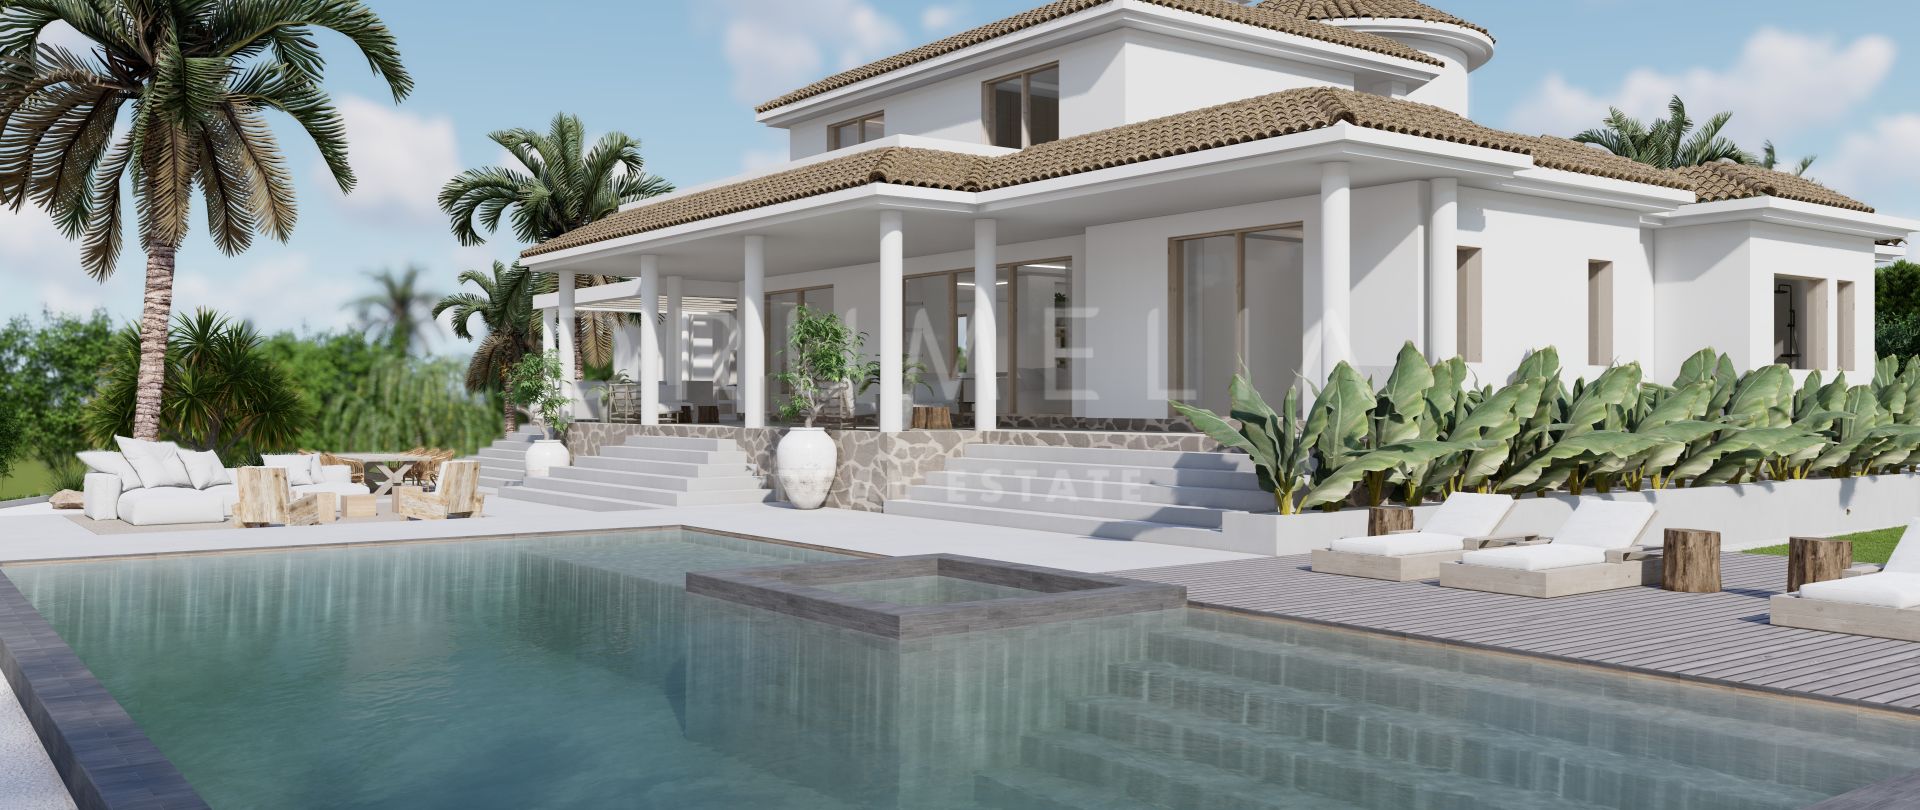 Preciosa villa mediterránea de lujo en venta con proyecto de reforma en El Paraíso